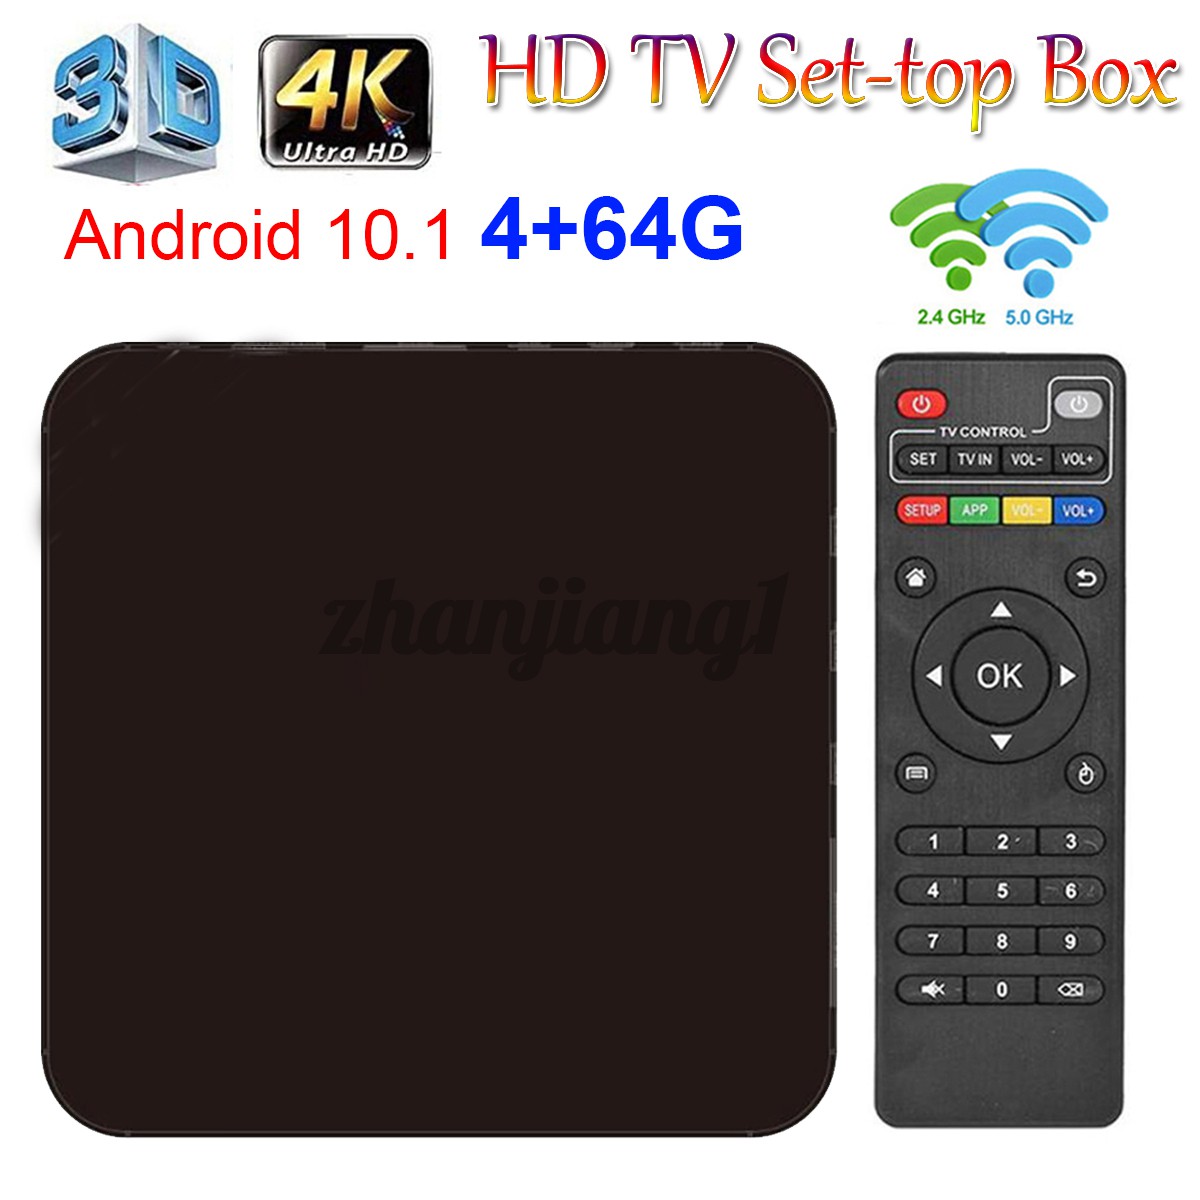 Thiết Bị Chuyển Đổi Tv Thường Thành Smart Tv Mx9 Tv Box 4k Android 10.1 5g 3d Wifi 4 + 64gb Quad Core